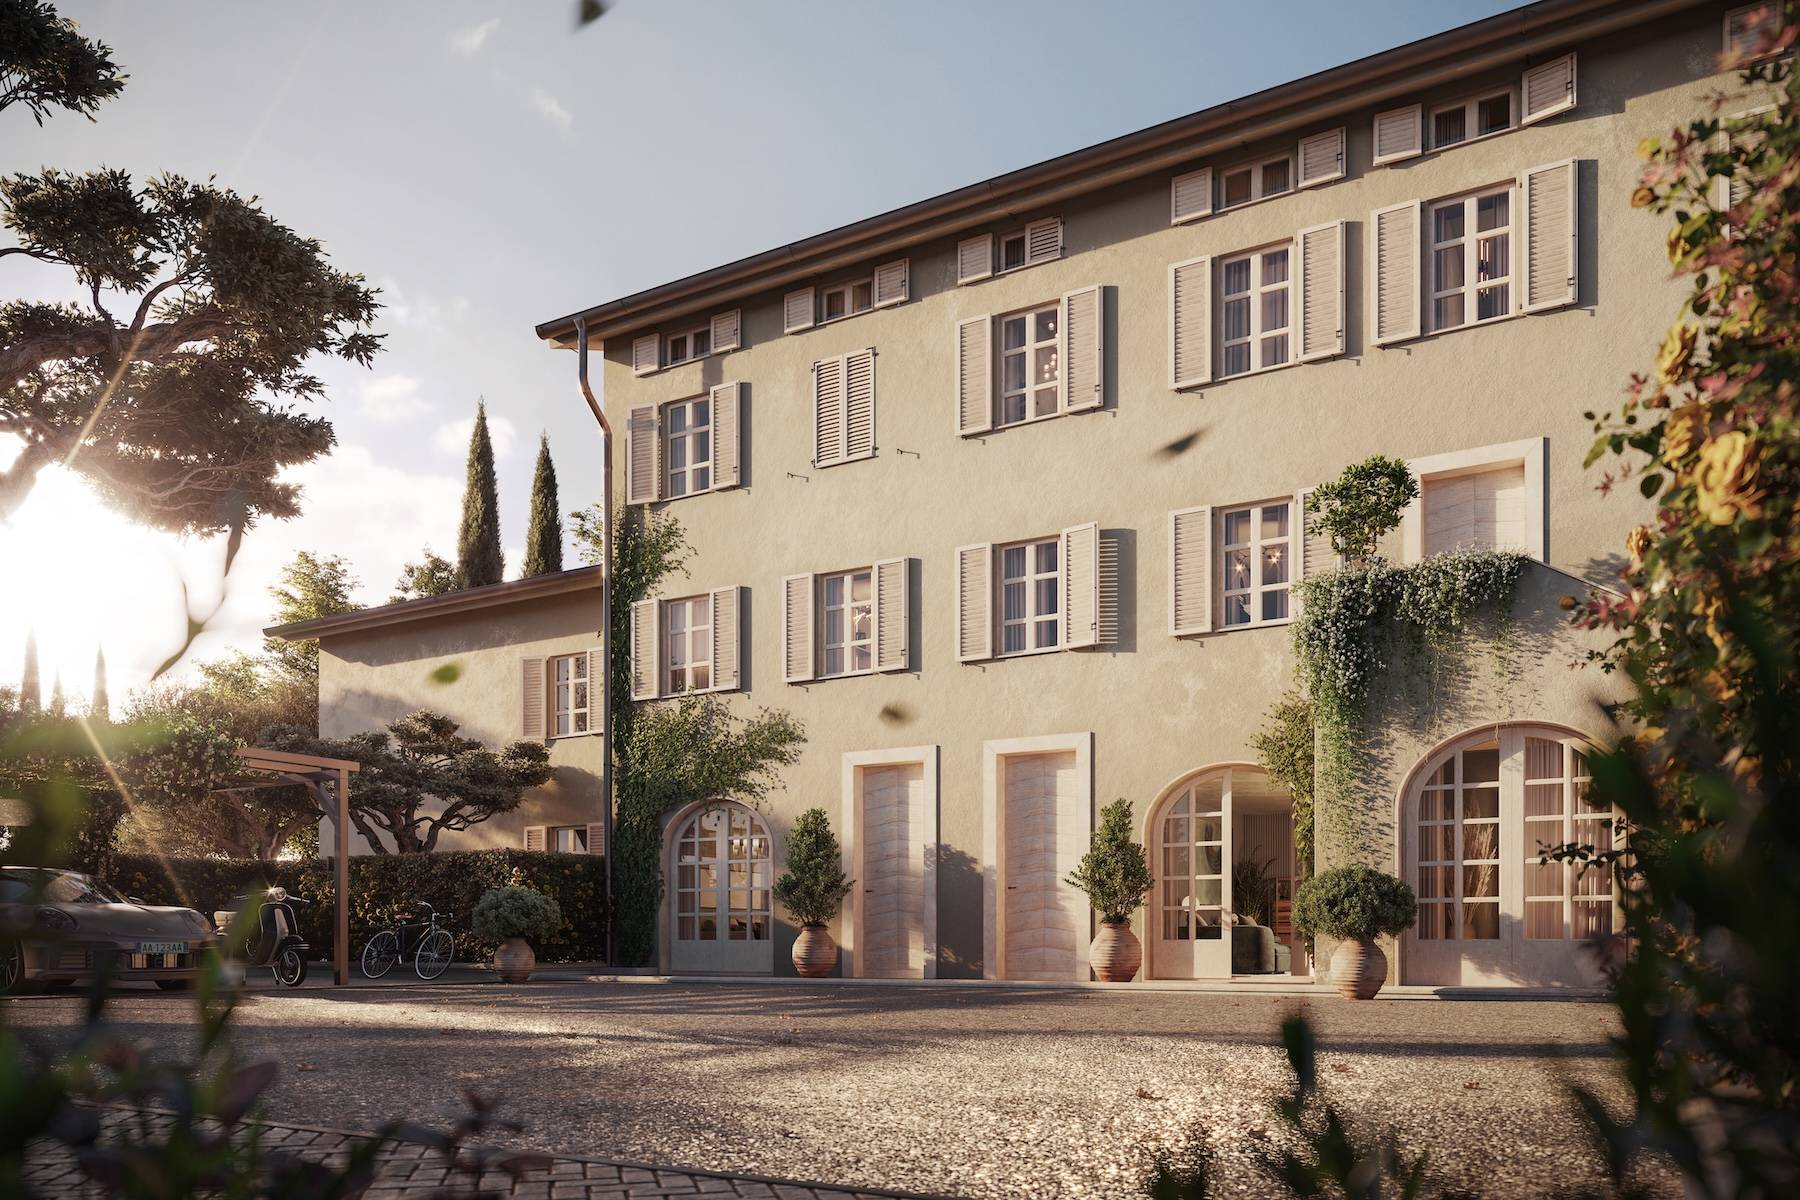 Elegant Villa under renovation in Gragnano